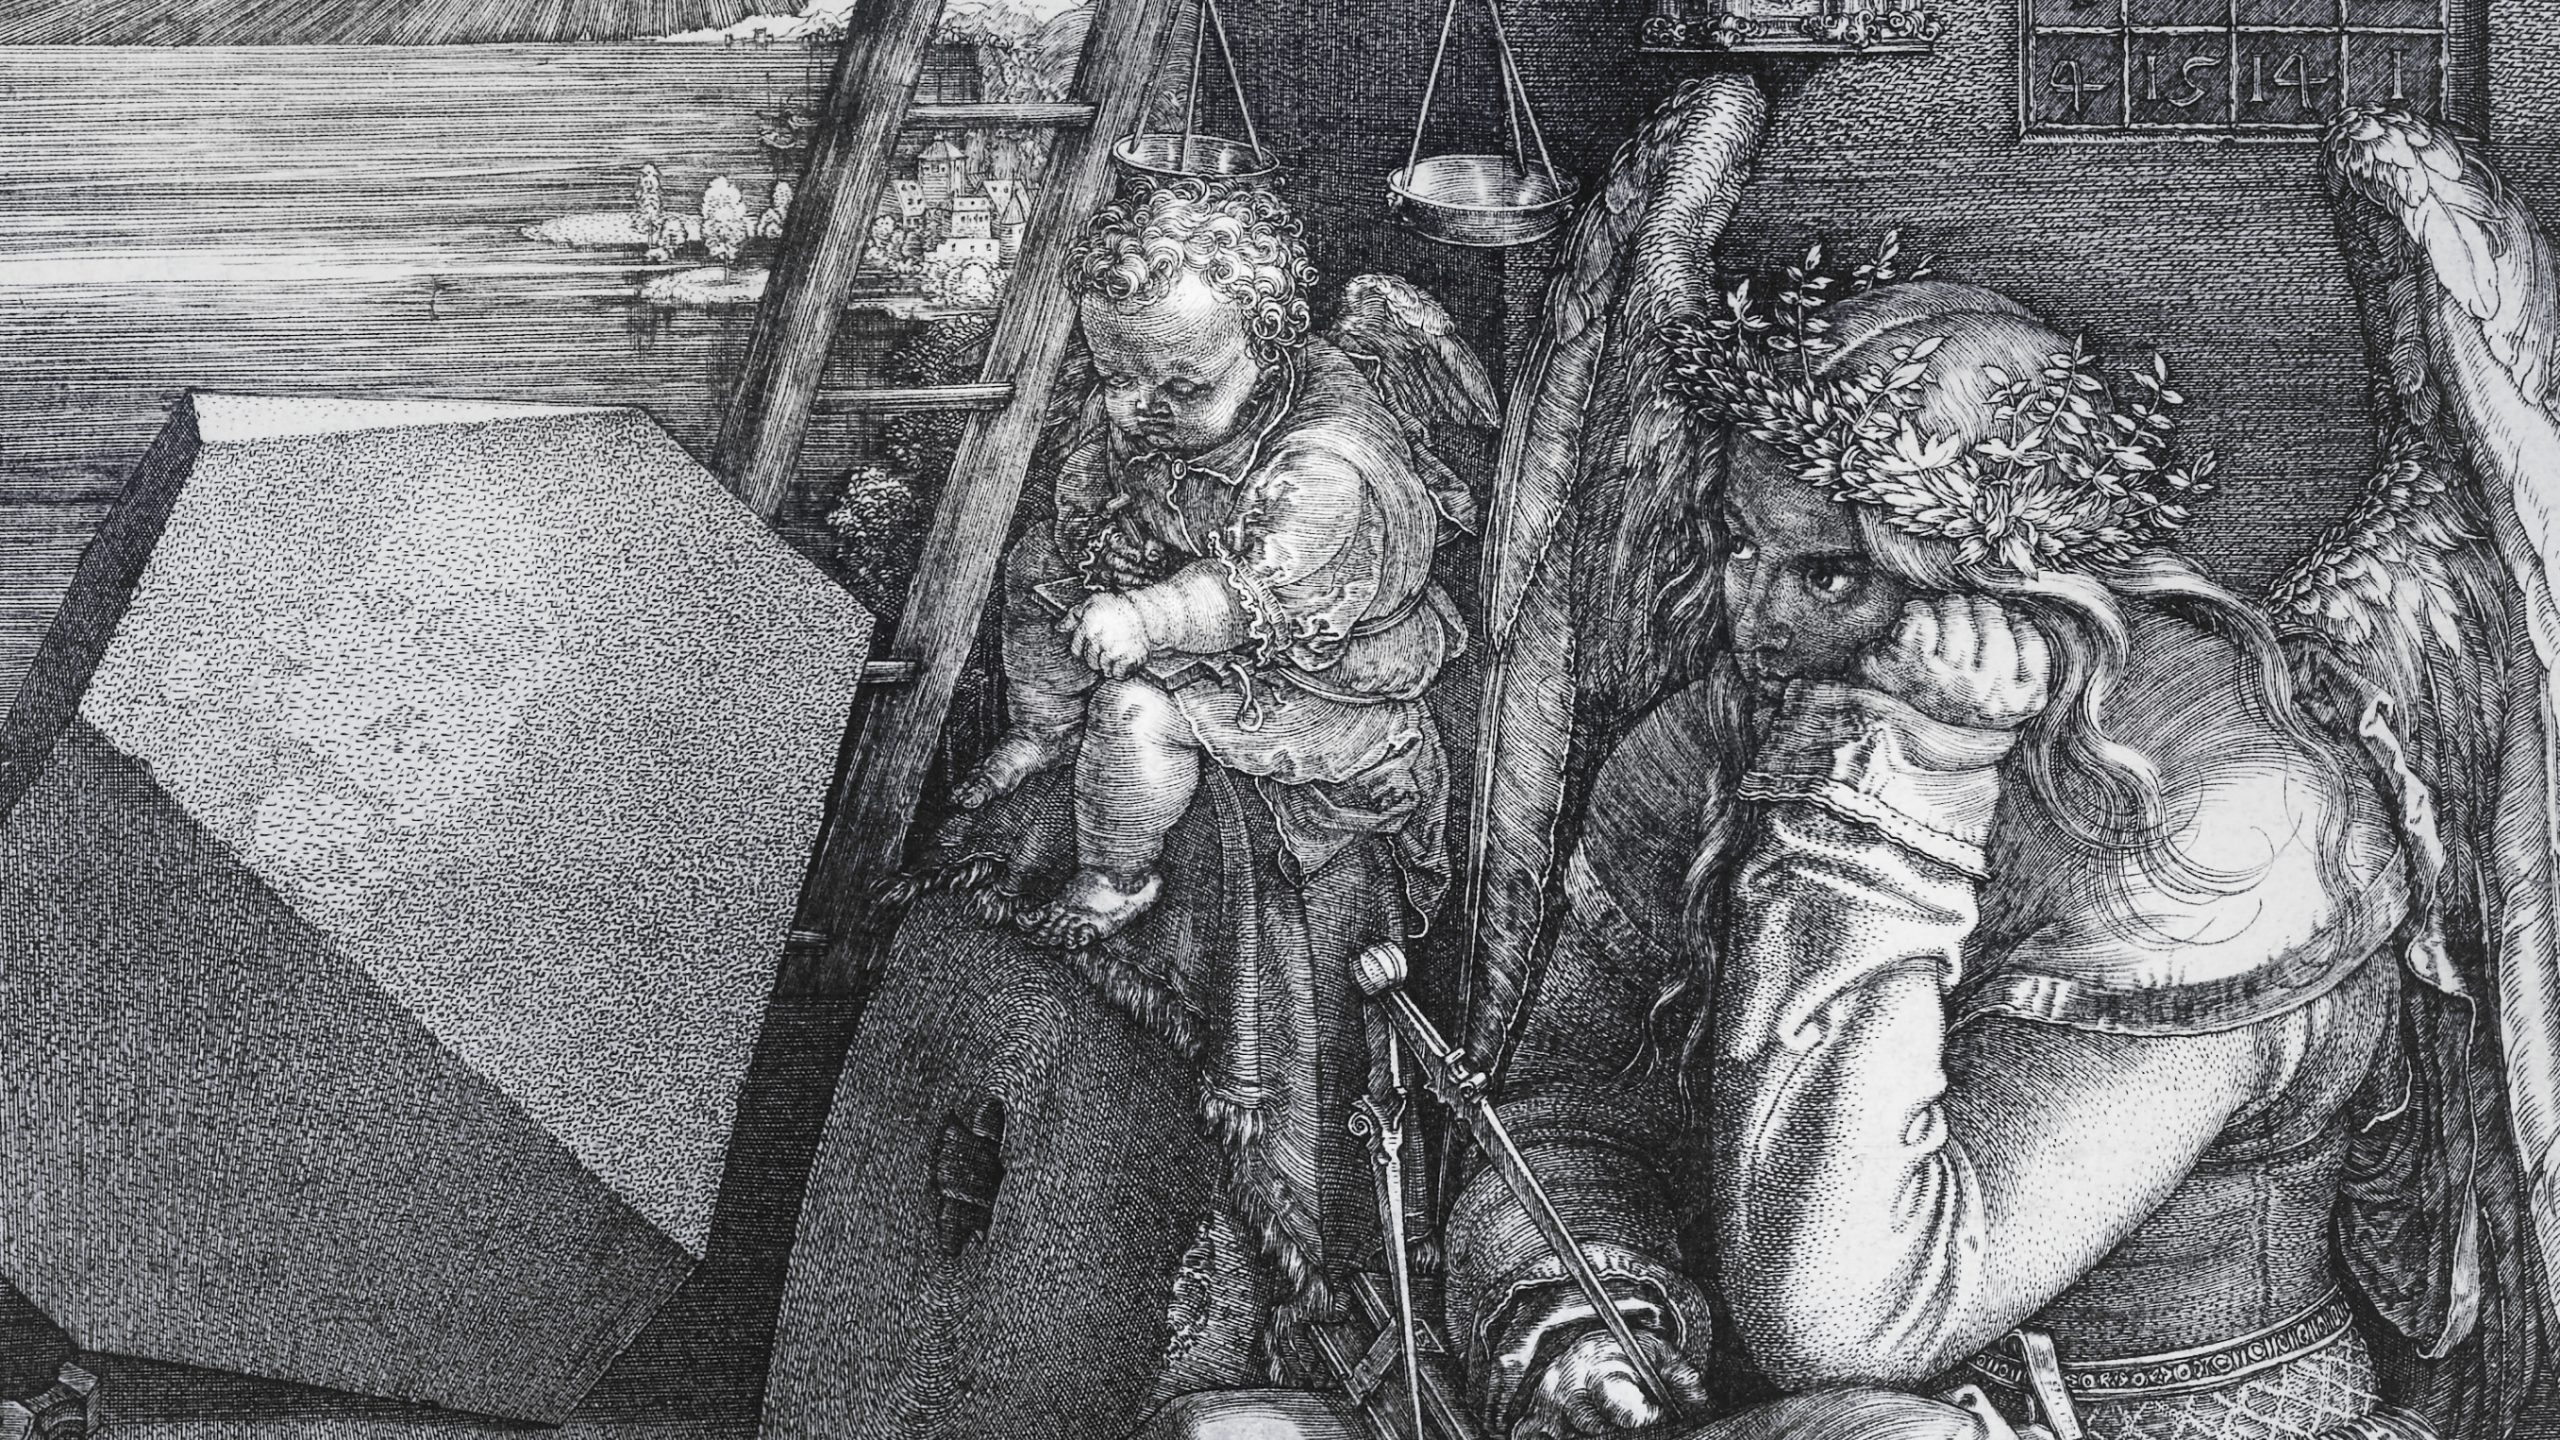 Dettaglio di Melancholia, bambino assopito con angelo alla sua destra, rappresentazione allegorica della melanconia